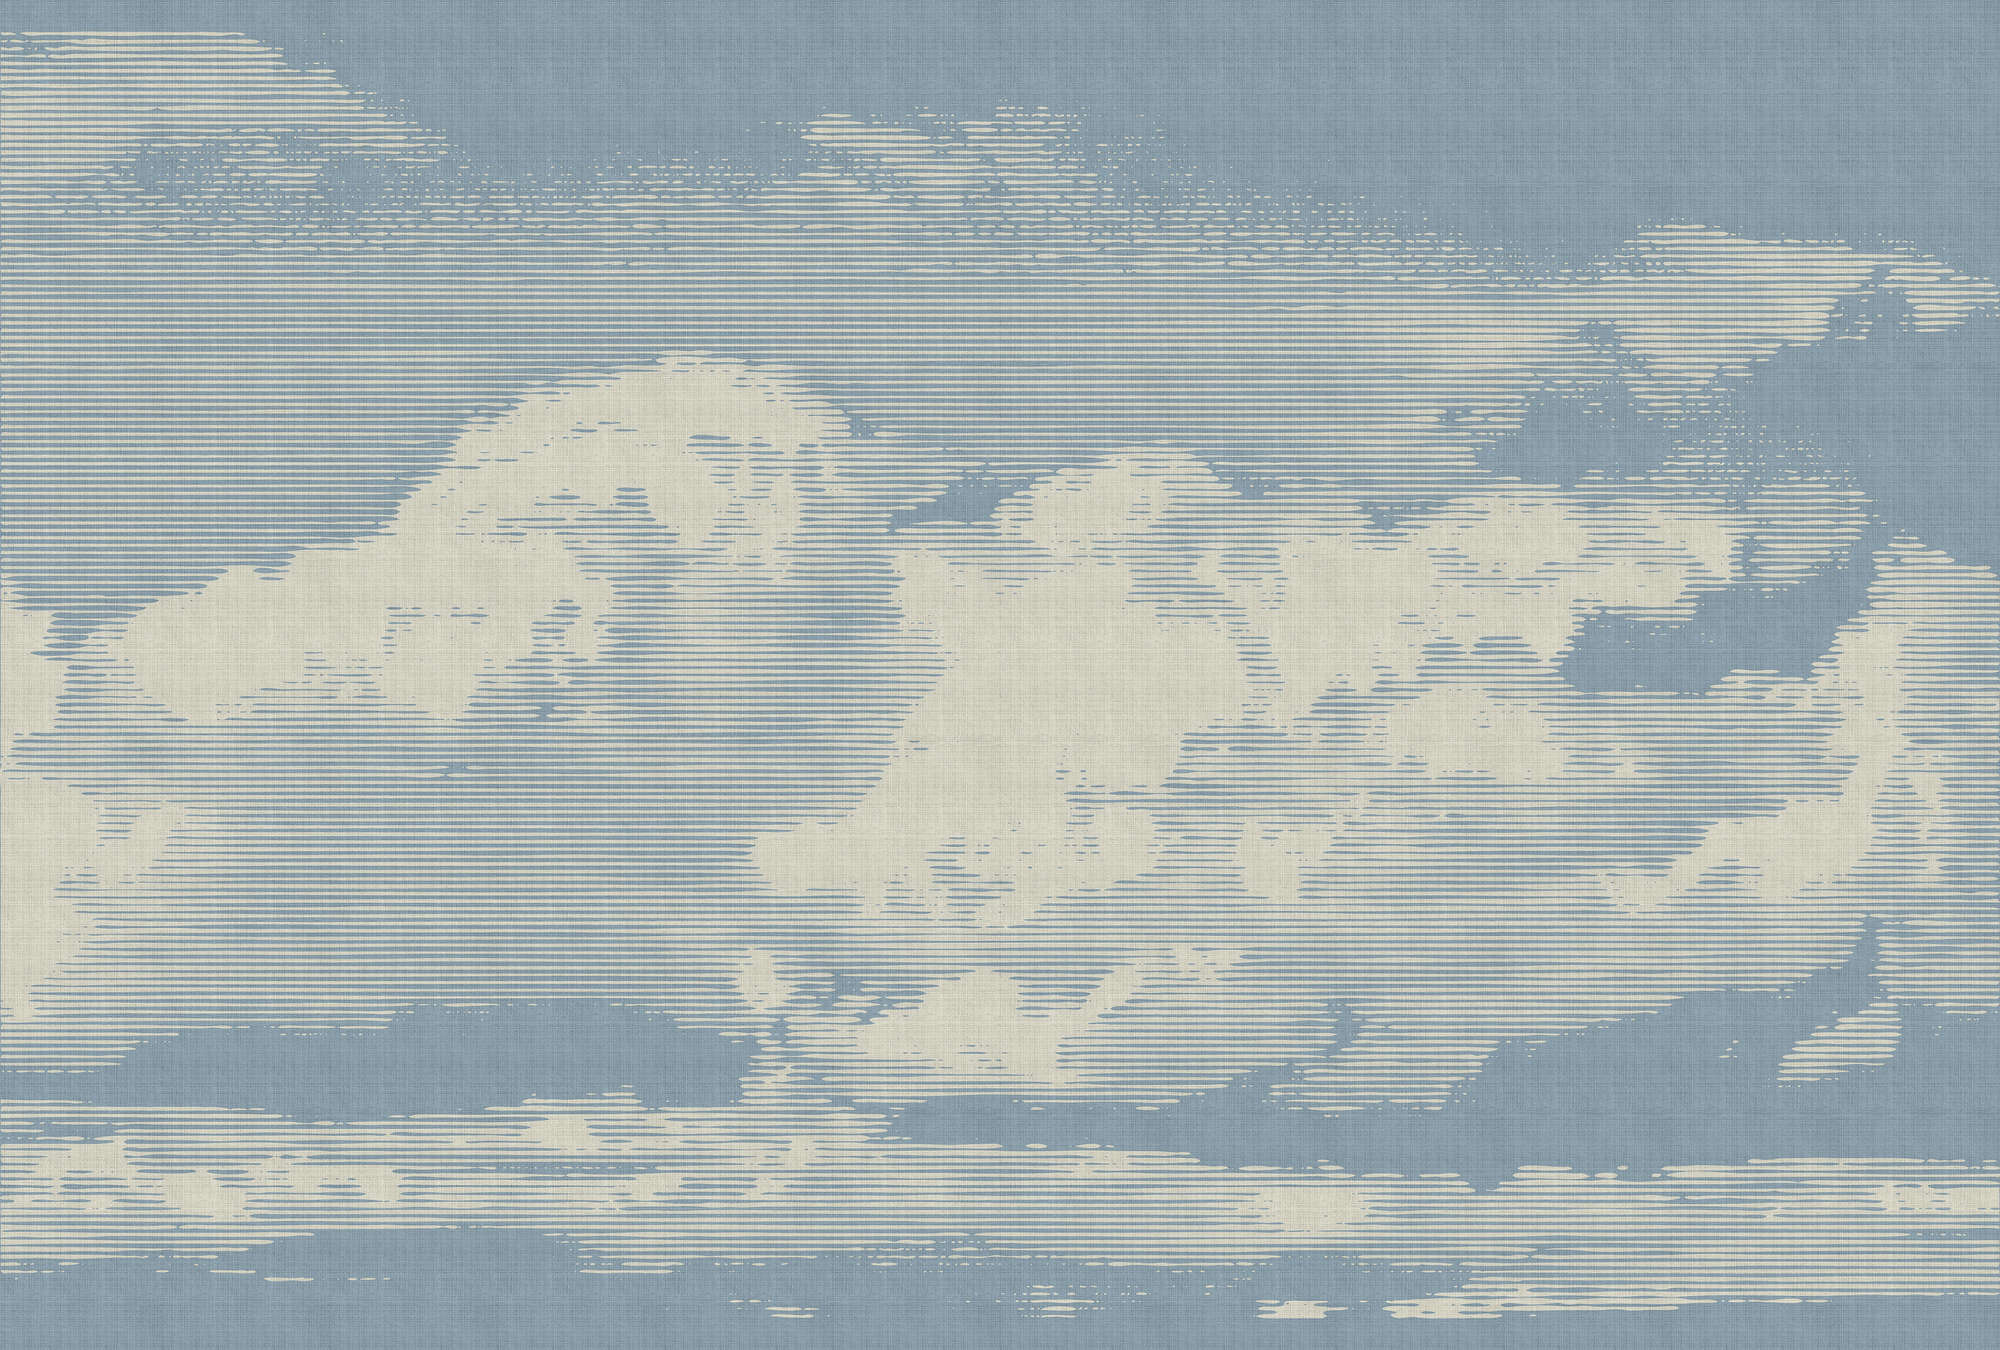             Nubes 1 - Papel pintado con motivo de nubes en estructura de lino natural - Beige, Azul | Estructura no tejida
        